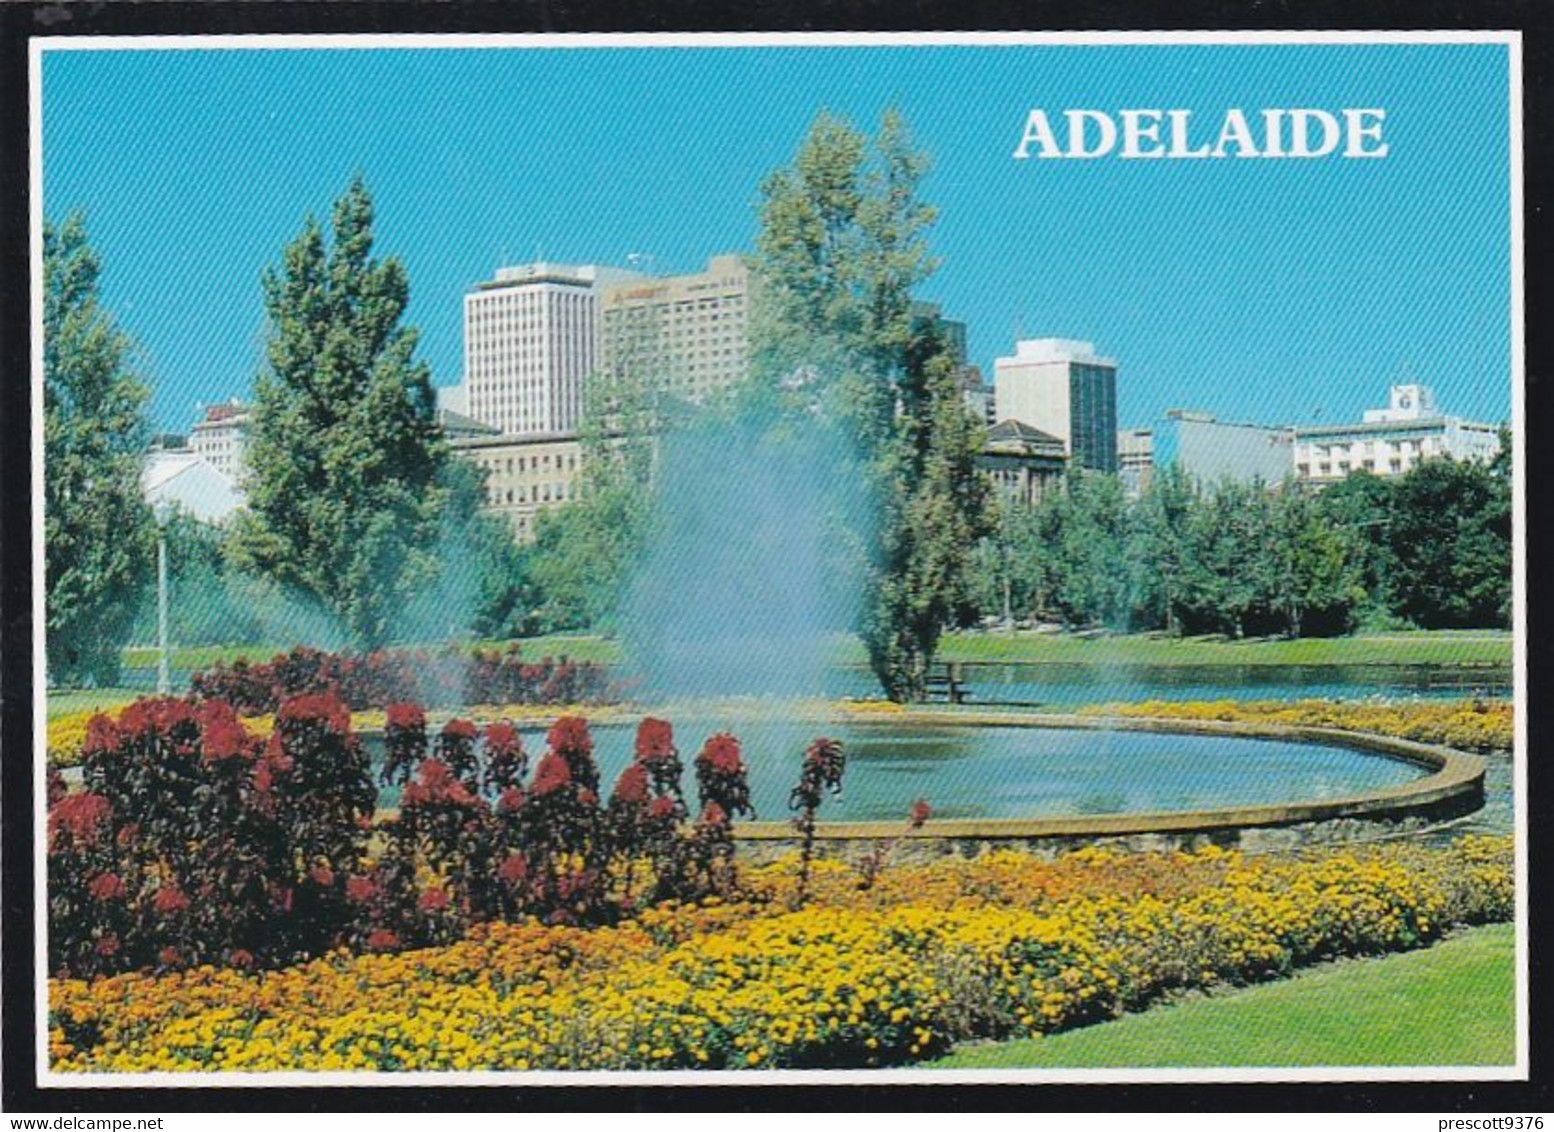 Adelaide -  - Australia - Unused Postcard - - Unclassified